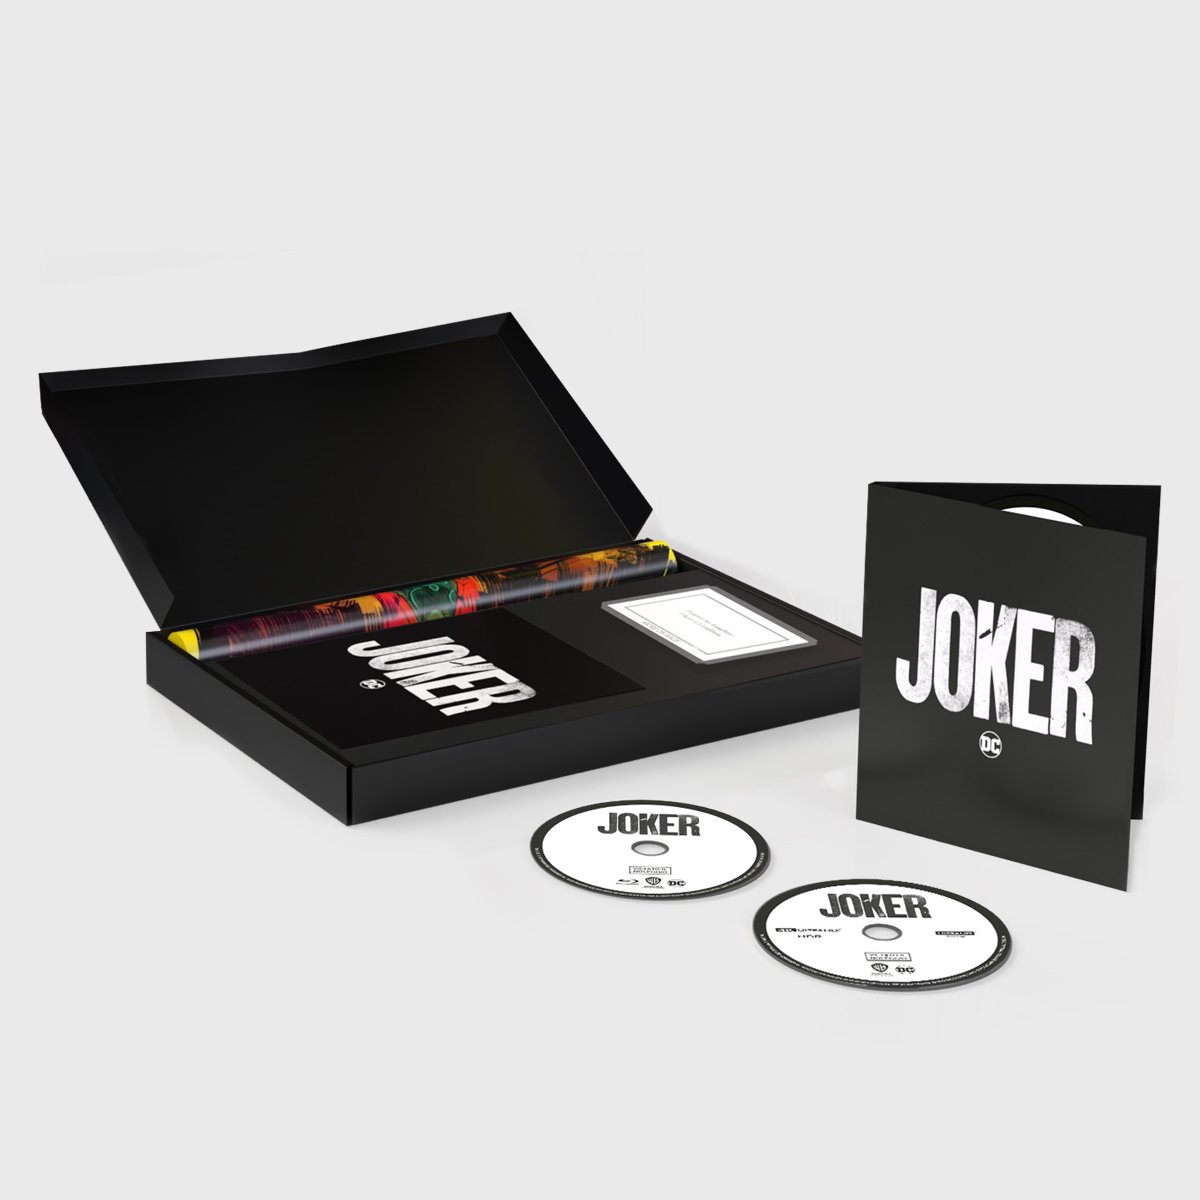 Il boxser della Joker Collector’s Edition